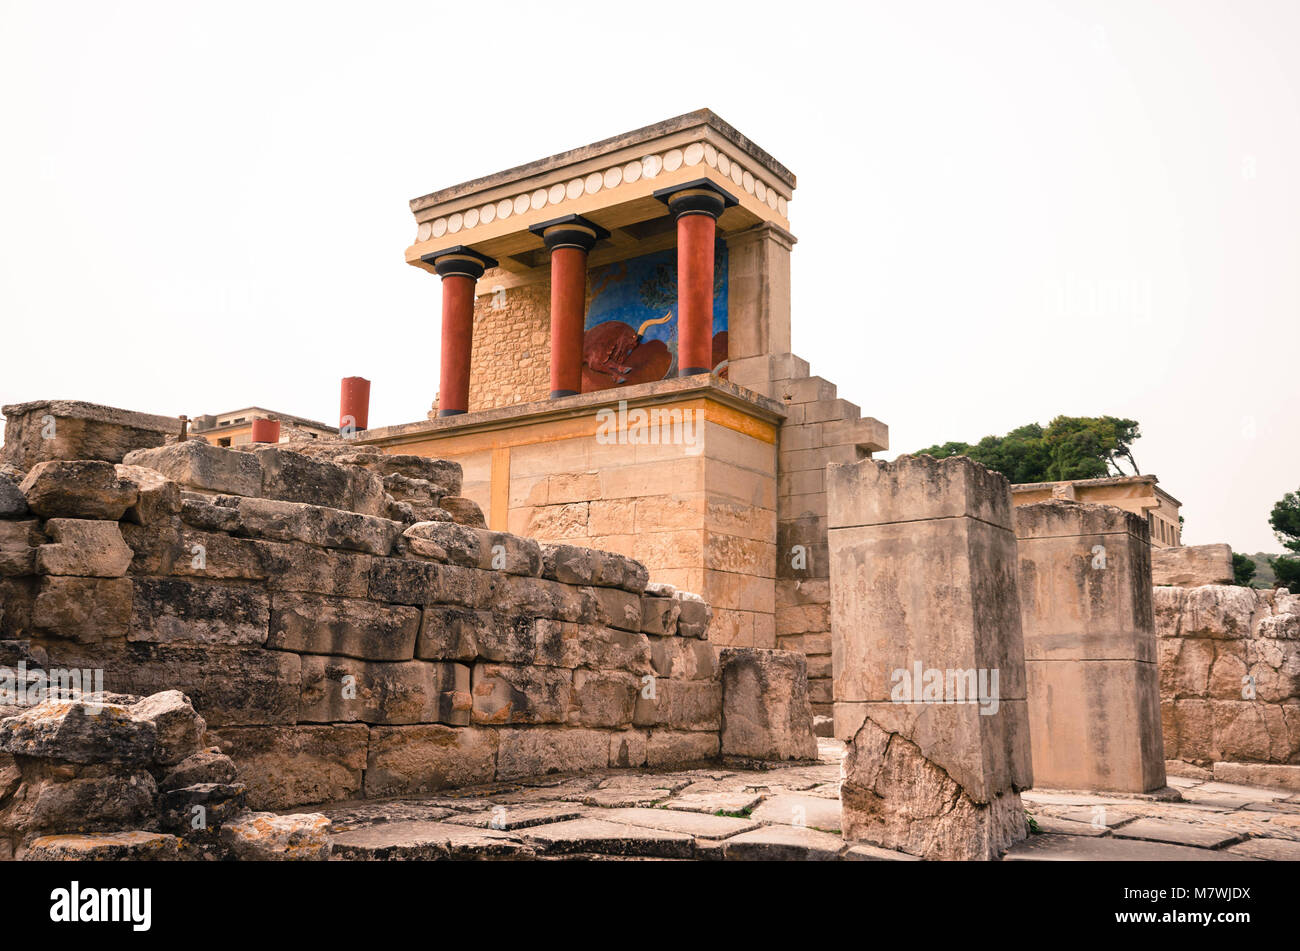 Der Palast von Knossos ist eines der schönsten Denkmäler der Welt. Es zieht jedes Jahr tausende von Besuchern, um die Importan zu bewundern. Stockfoto